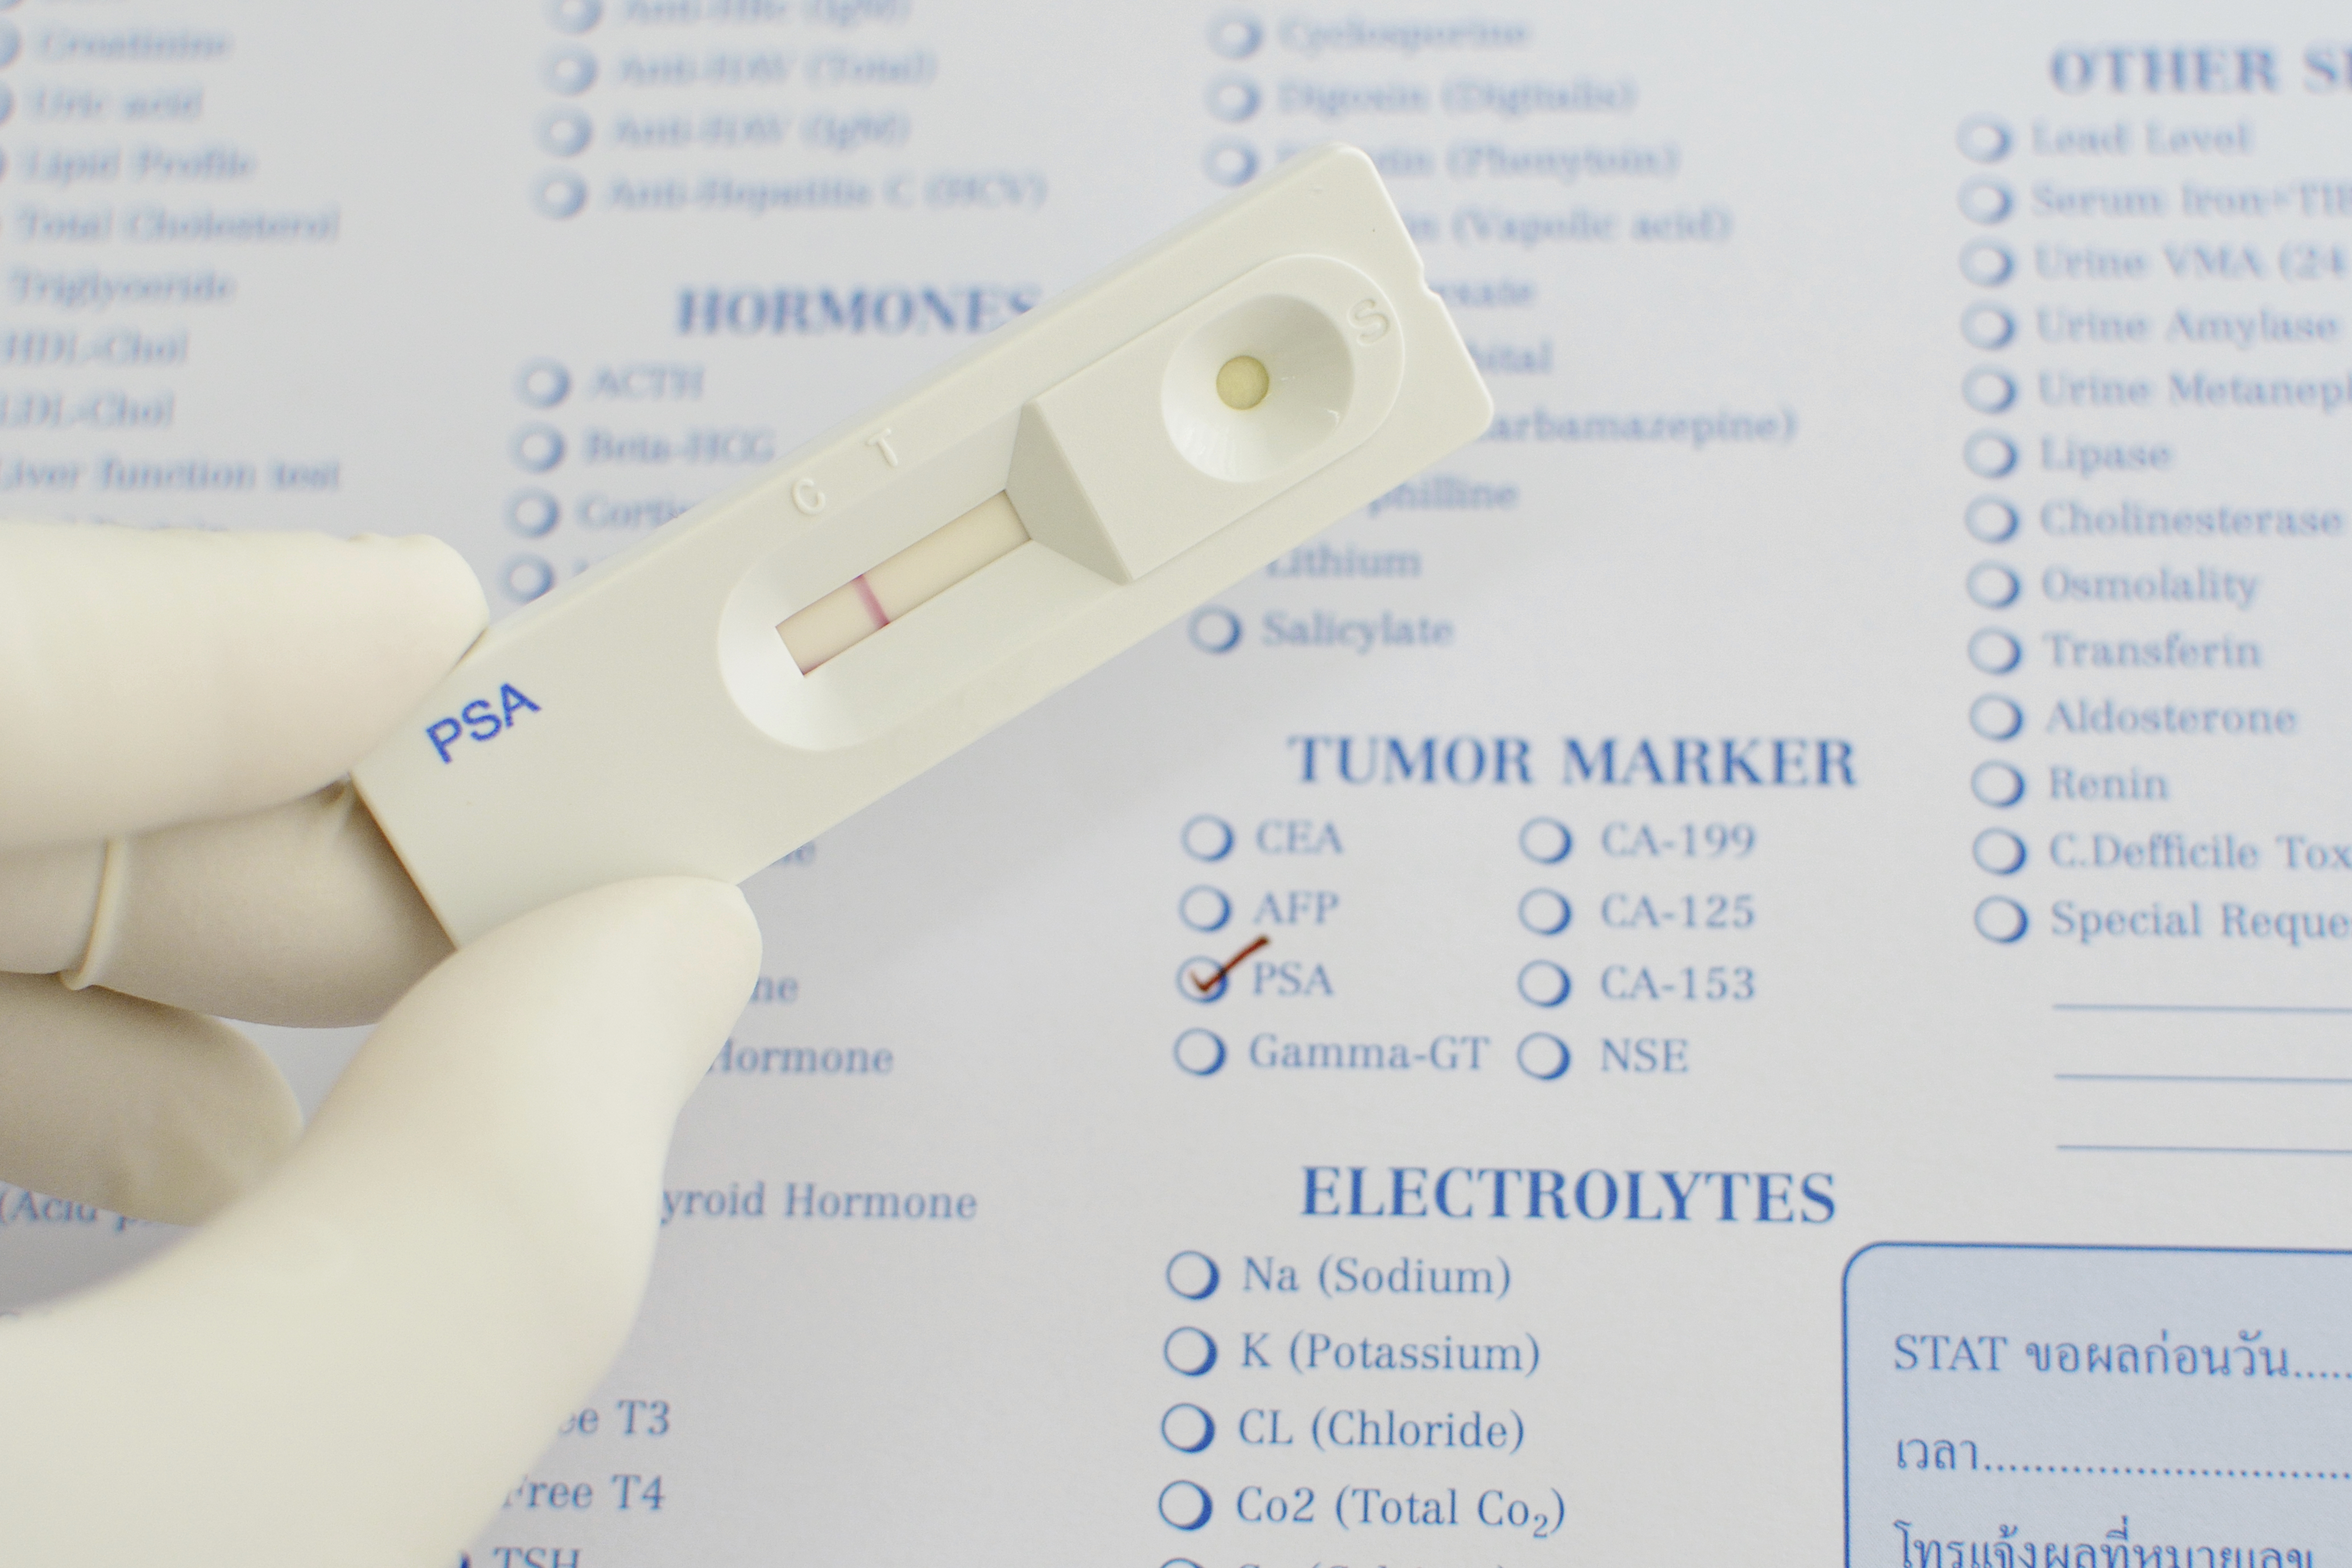 prostate tumor marker test